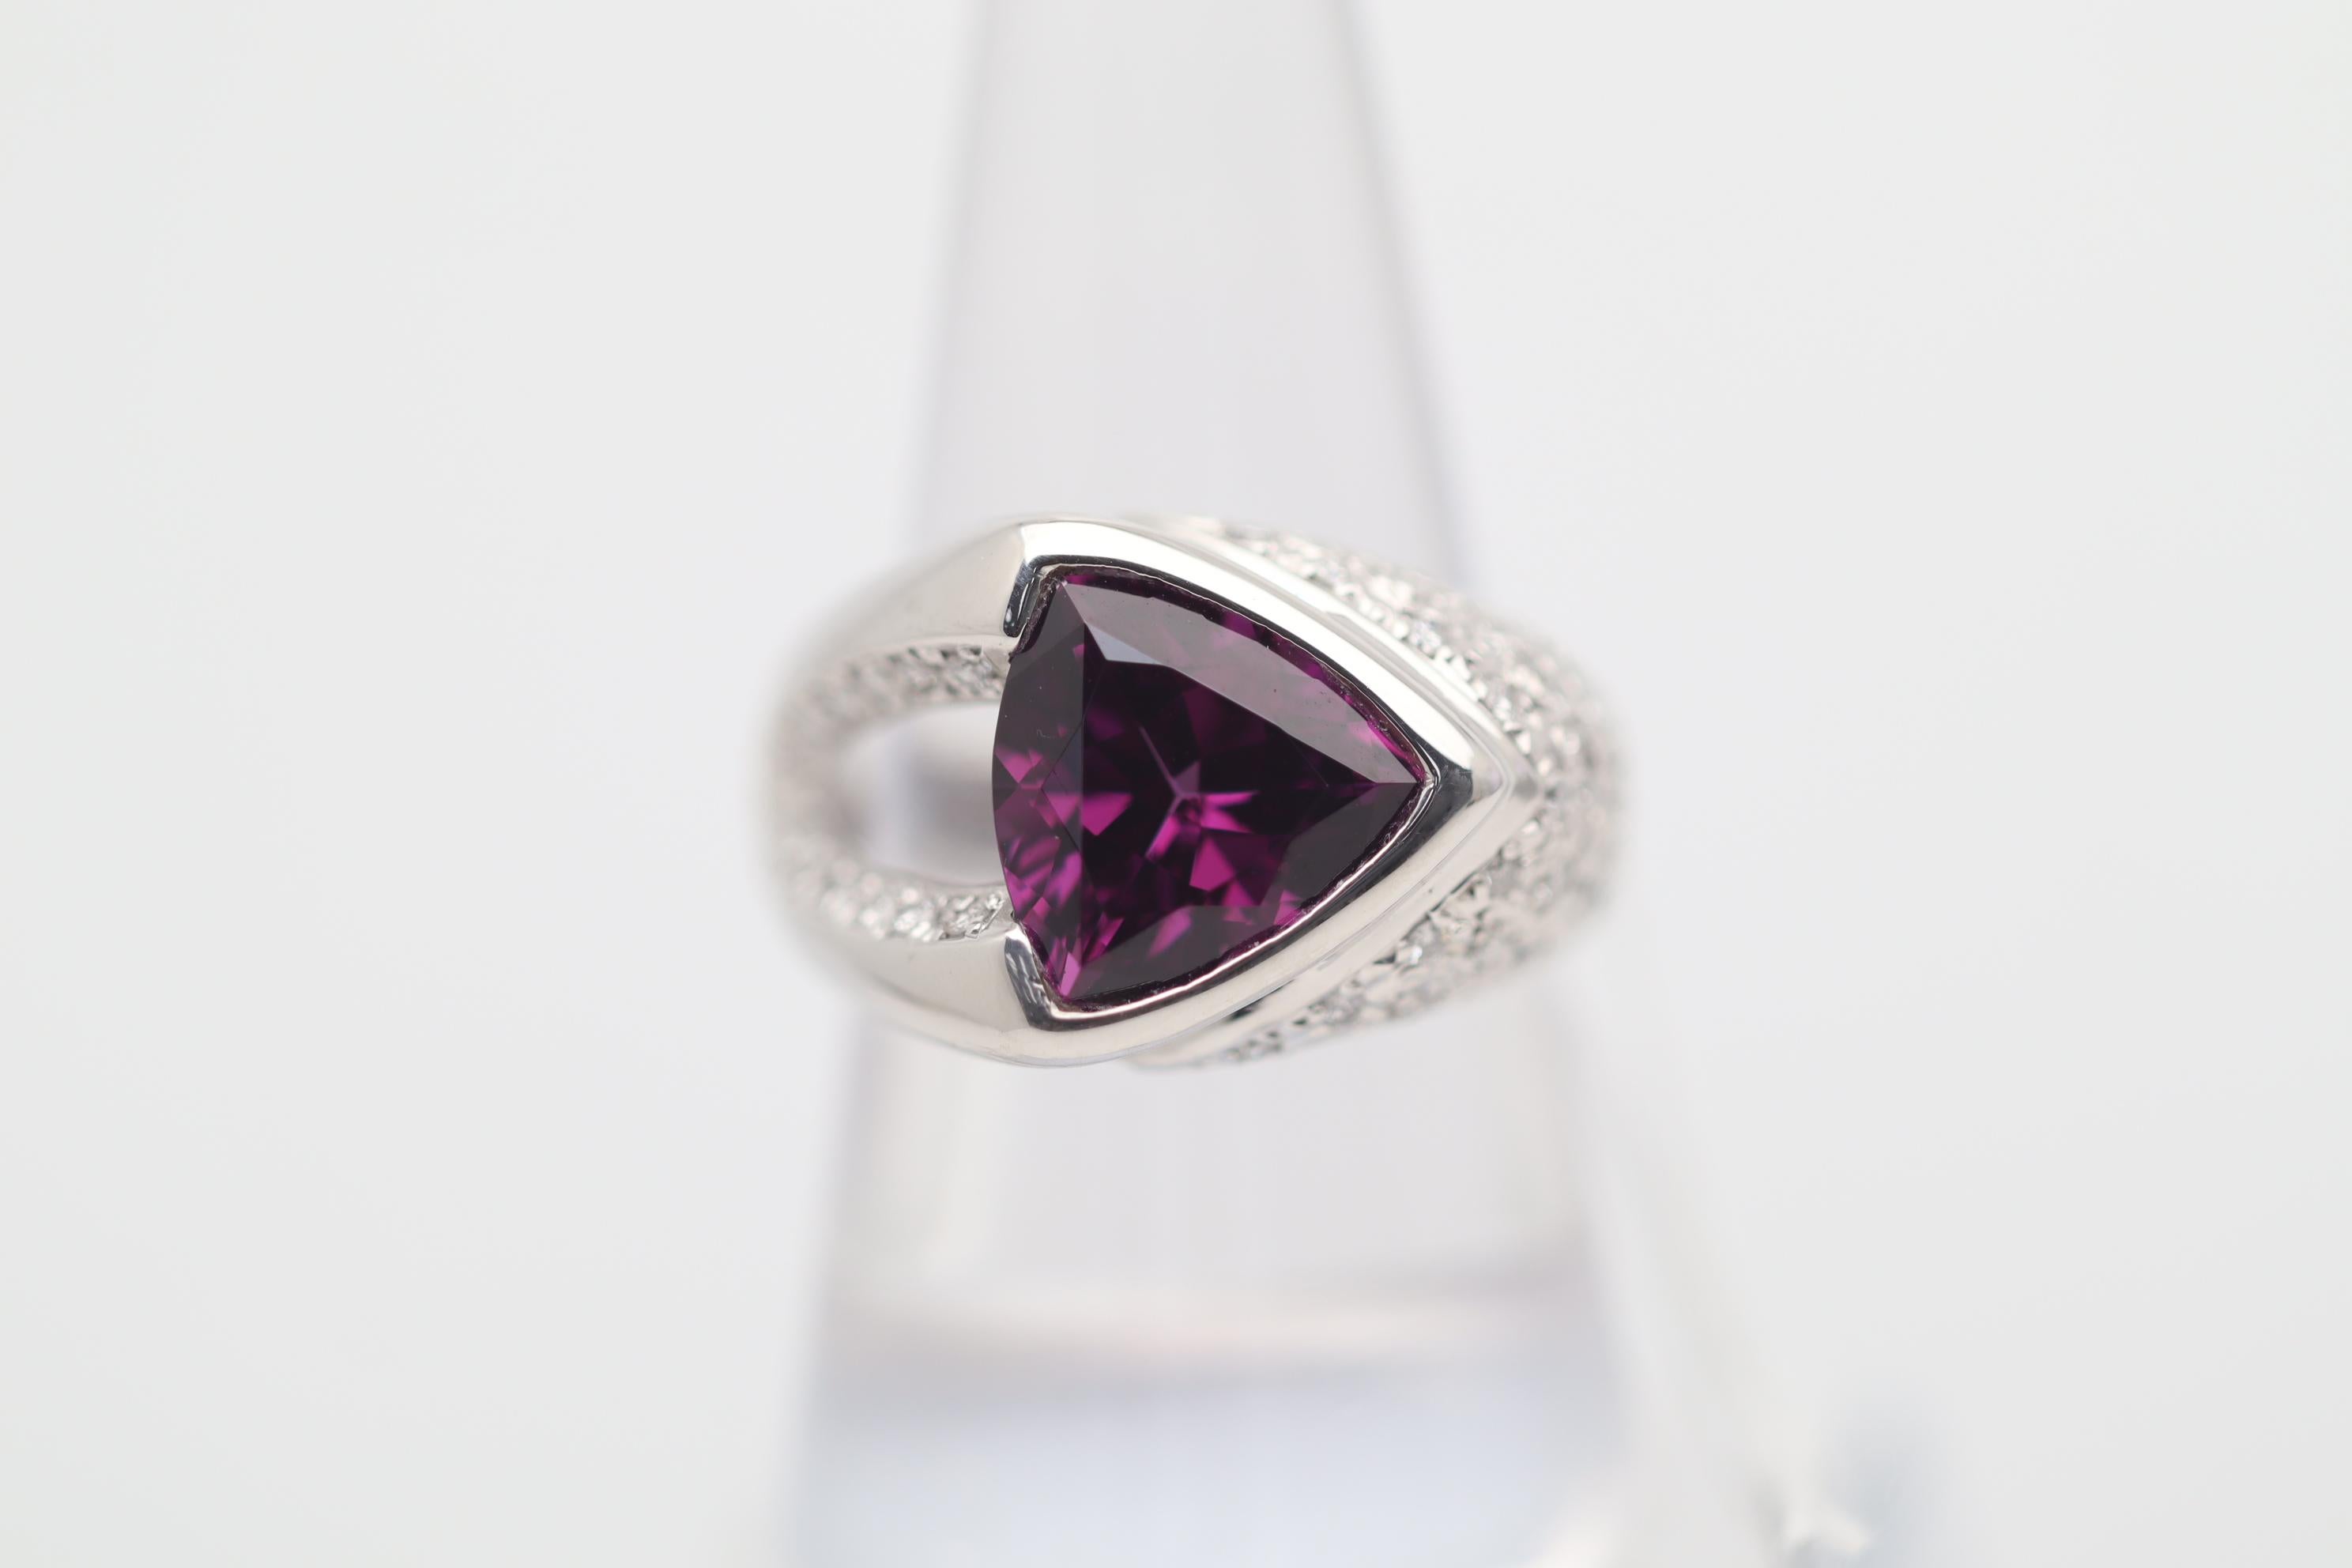 Ein einzigartiger Ring mit einem Rhodolith-Granat von 4,85 Karat, der eine schöne dreieckige Form und eine intensive, lebhafte violett-rote Farbe aufweist. Ergänzt wird er durch 0,36 Karat runde Diamanten im Brillantschliff, die den Ring umgeben.